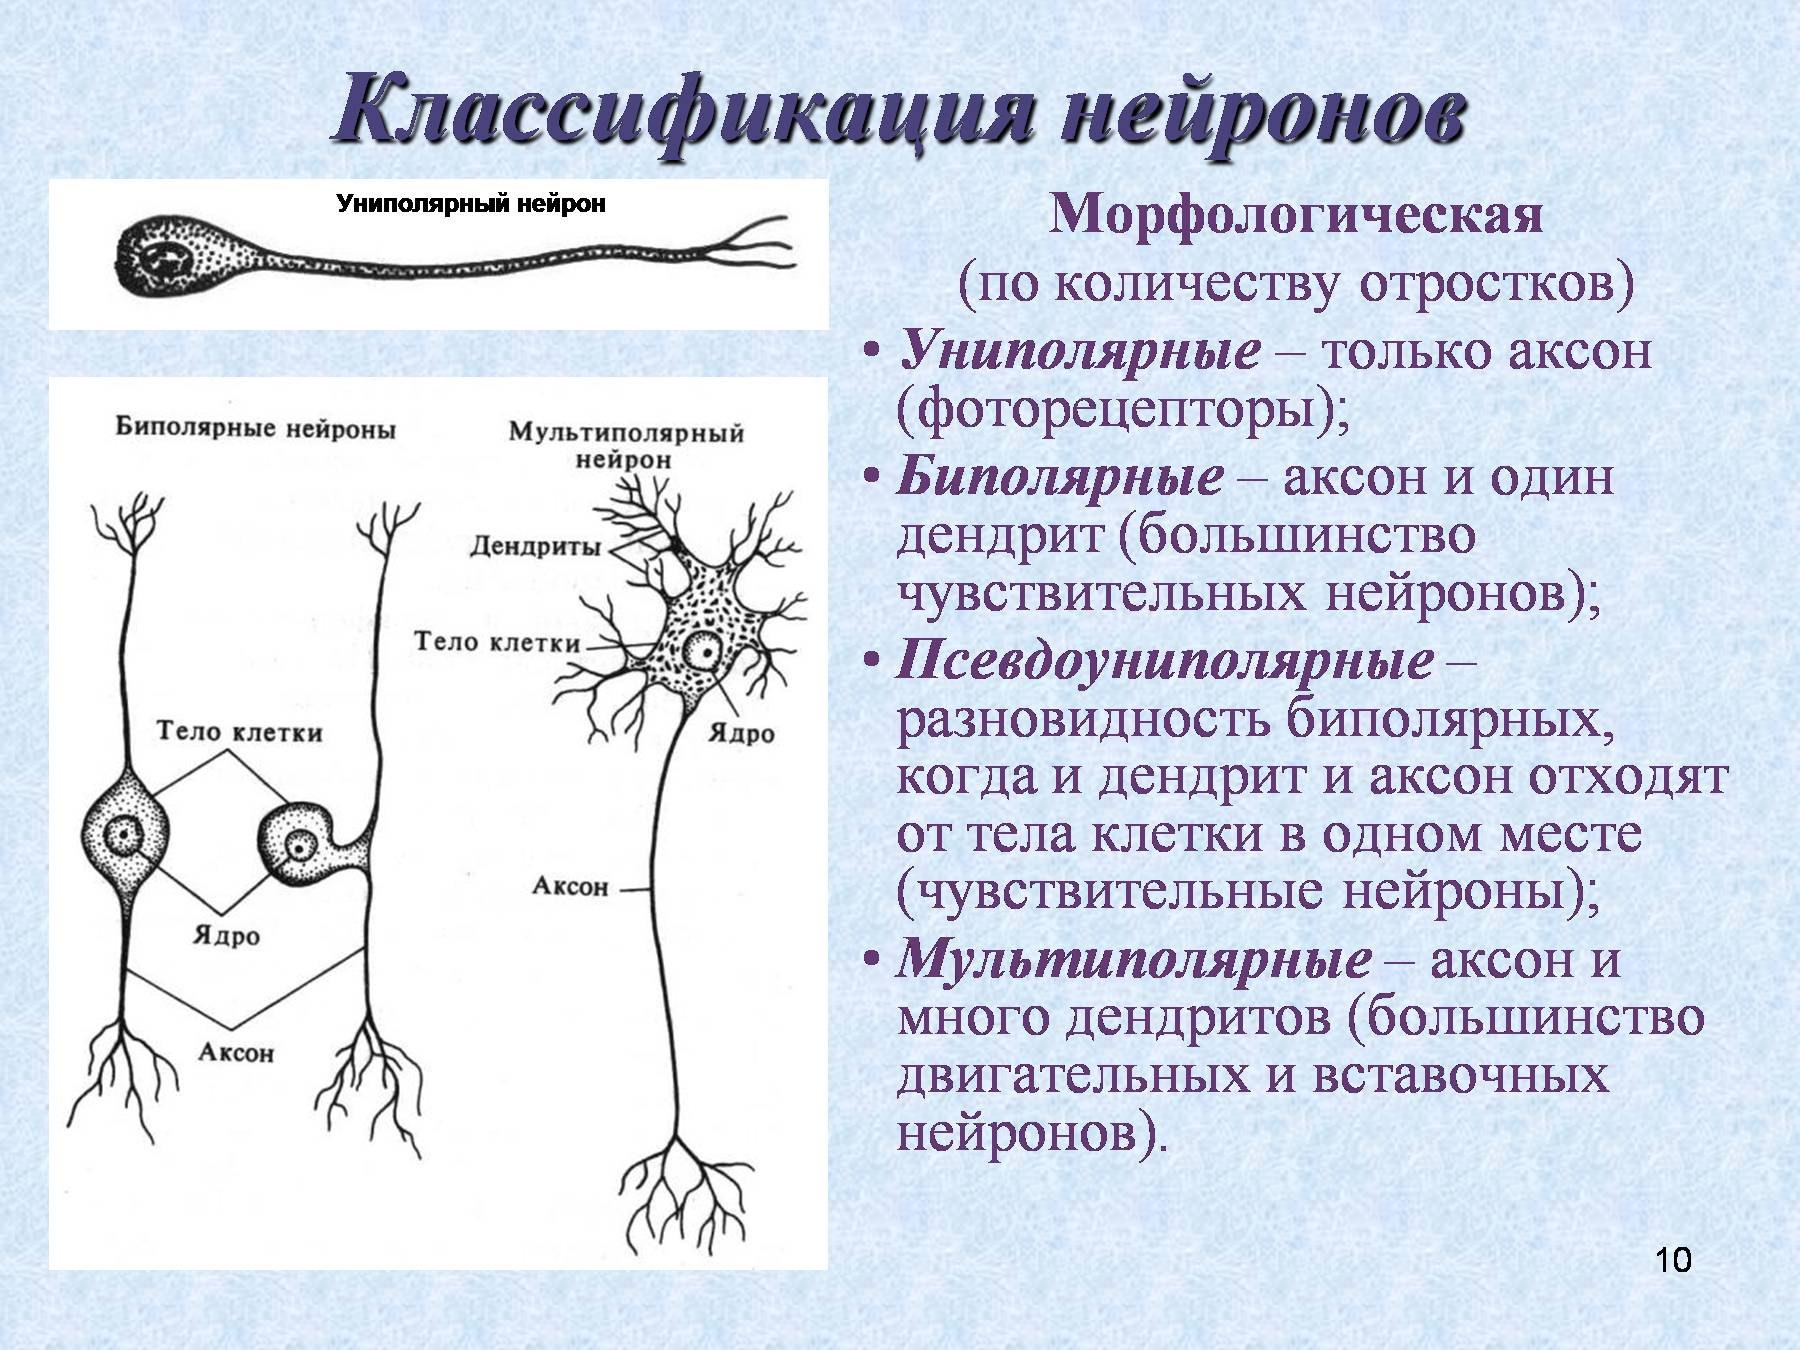 Примеры нервных клеток. Псевдоуниполярные Нейроны строение. Нервная ткань классификация нейронов. Классификация нейронов биполярный униполярный. Нейрон строение и функции.